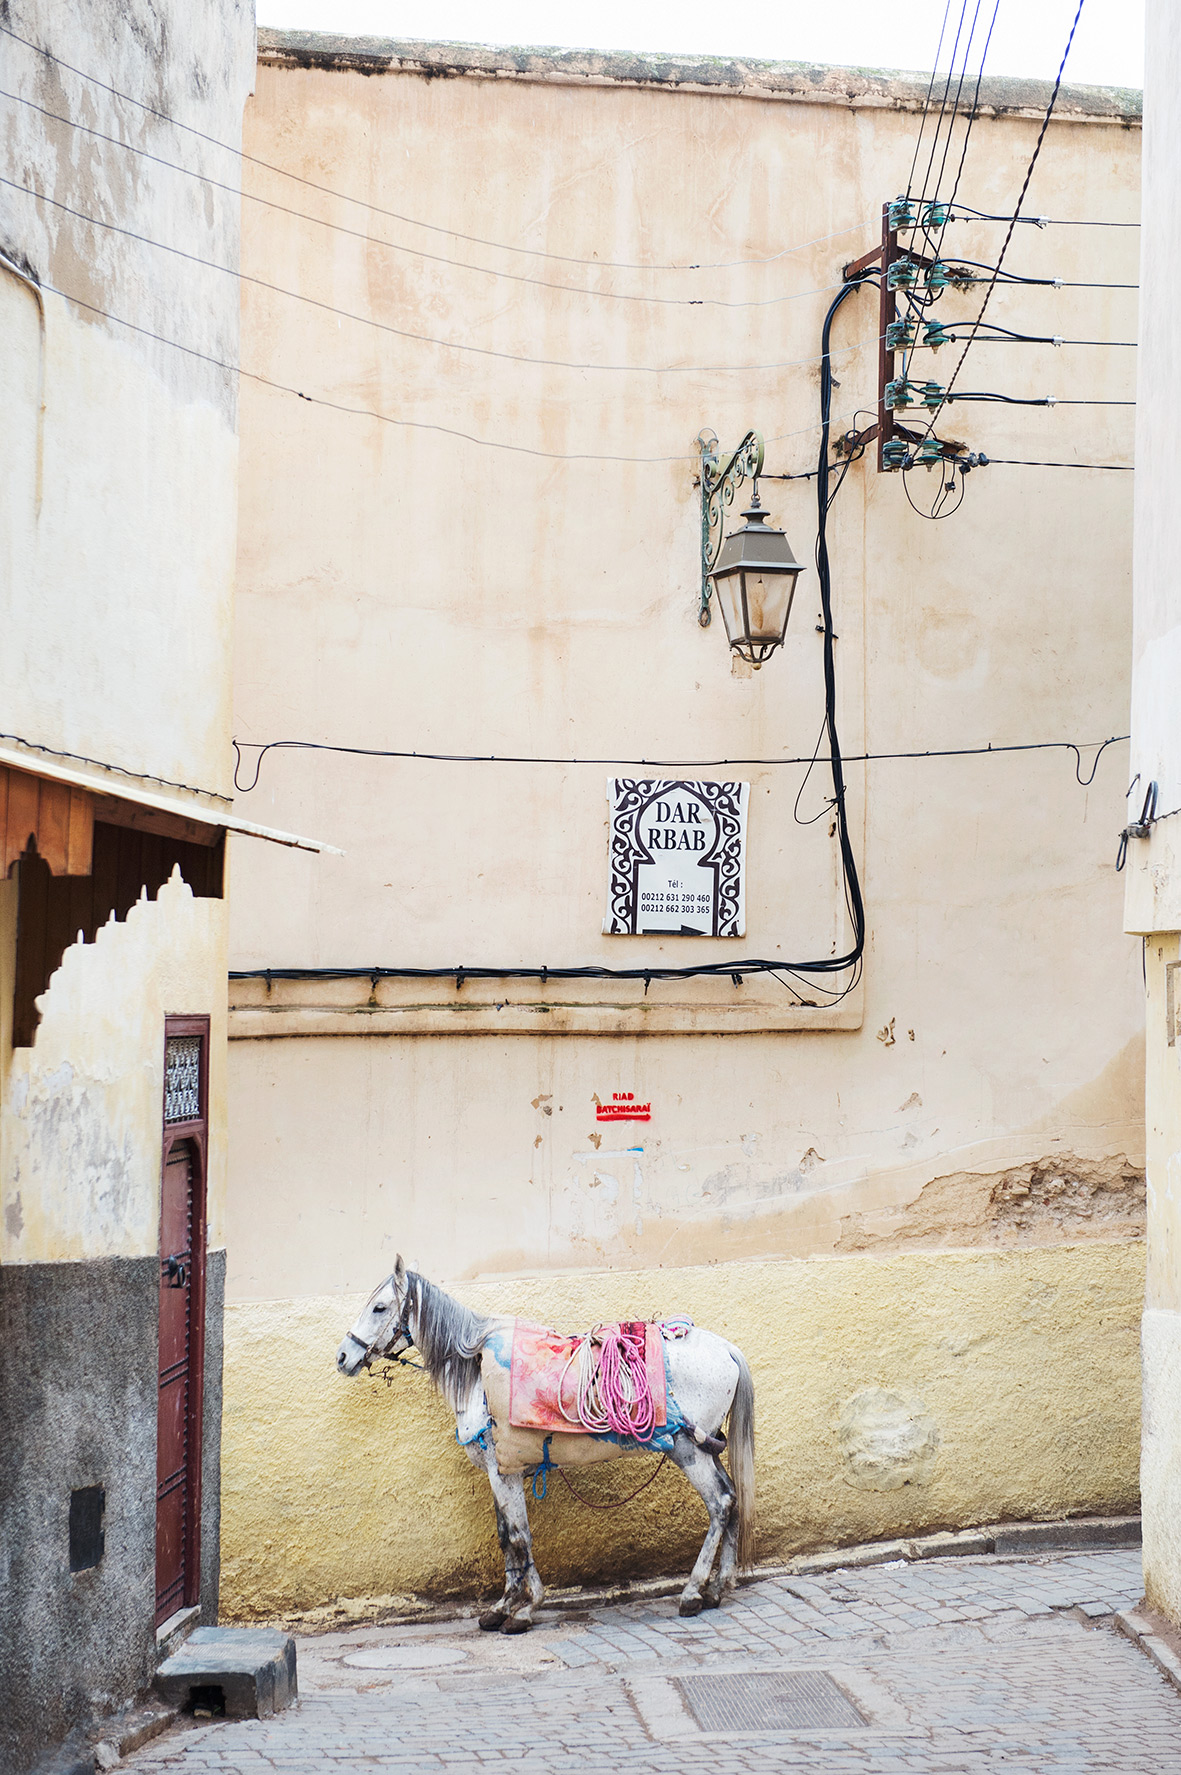 Altstadt von Fes in Marokko, Bild aus Afrika erhältlich im Onlineshop